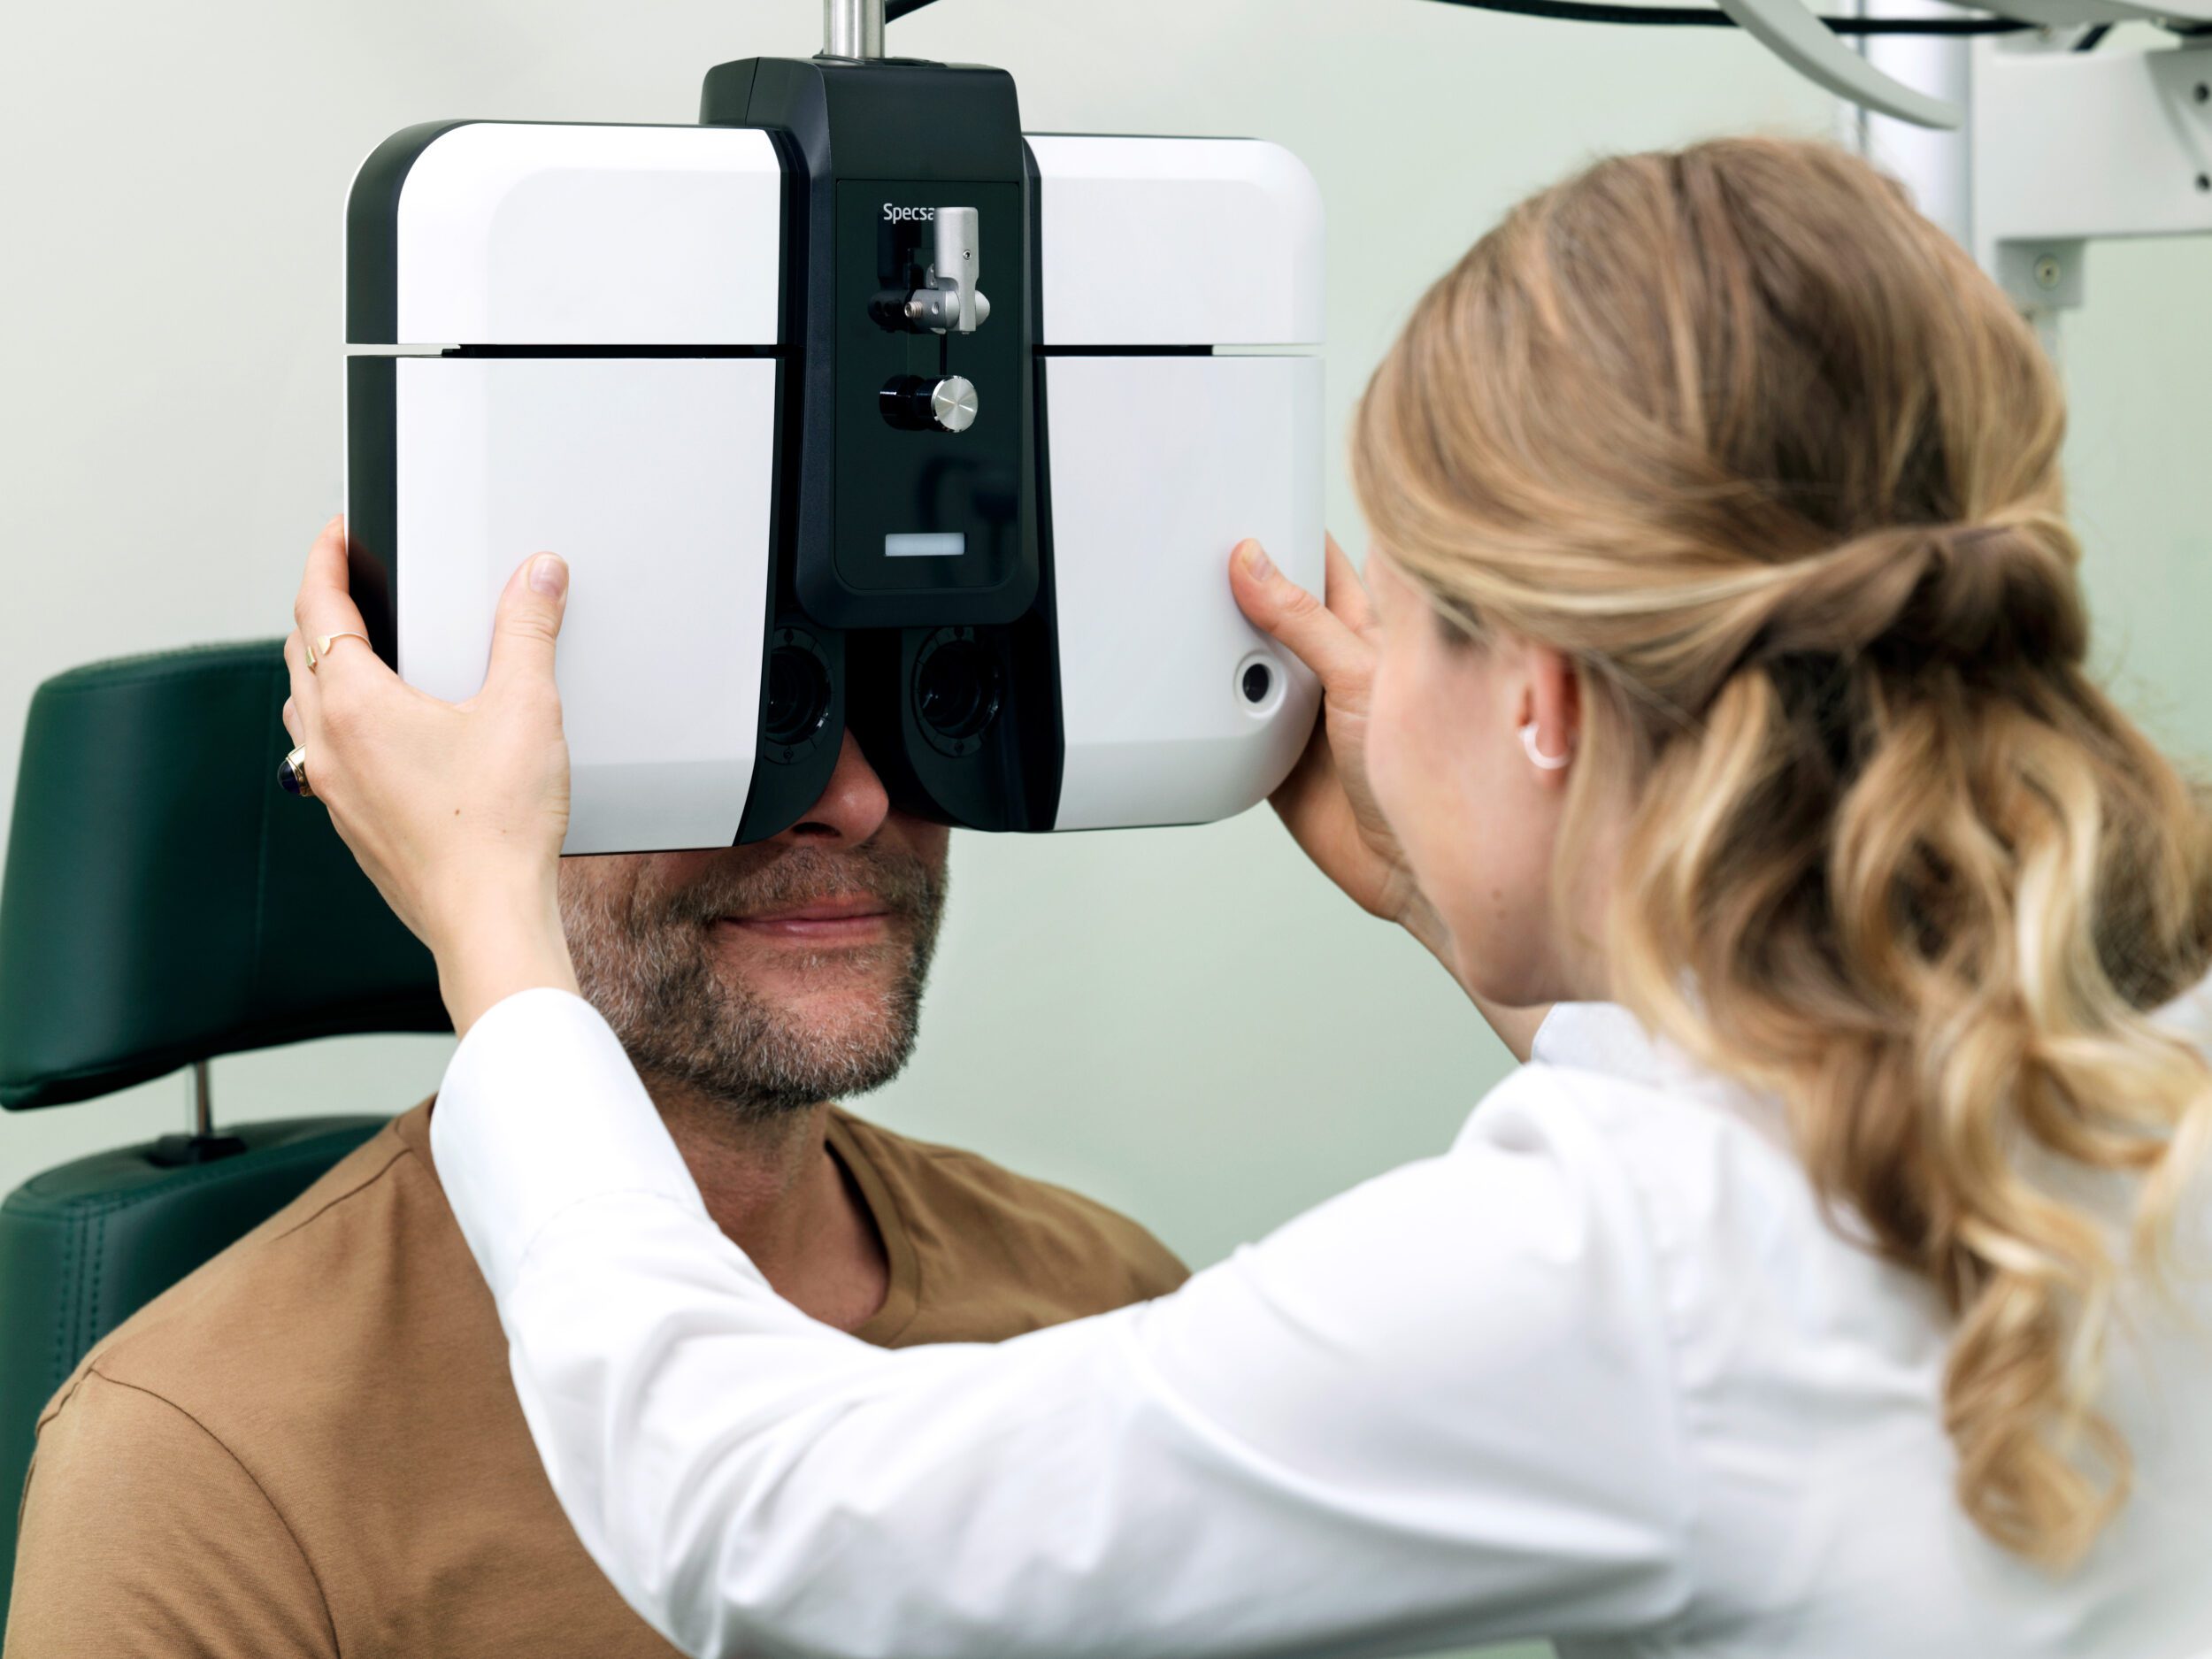 Lokal optiker sætter fokus på grøn stær i uge 10 – derfor er regelmæssige synstests vigtige